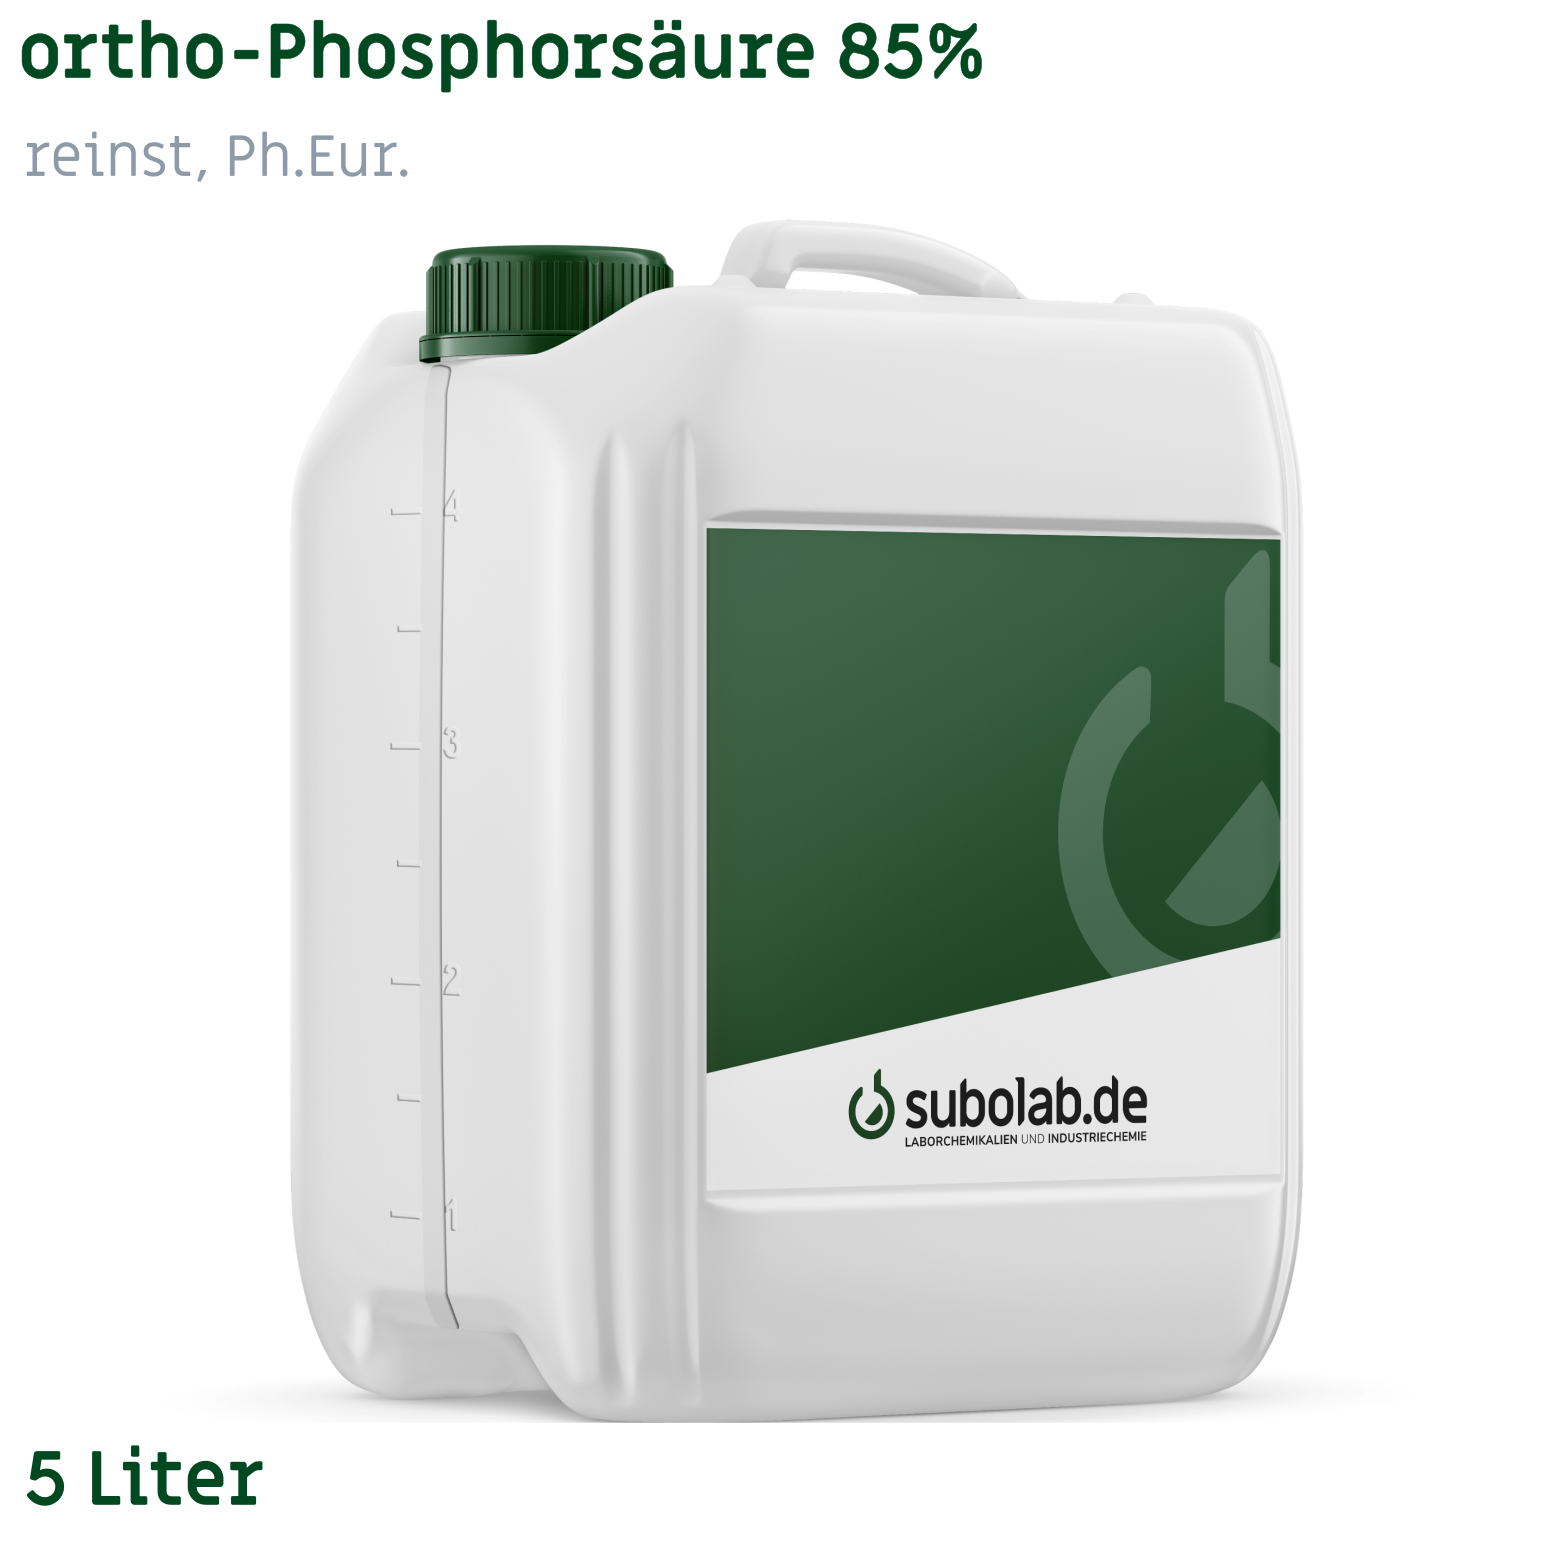 Bild von ortho-Phosphorsäure 85% reinst, Ph.Eur. (5 Liter)